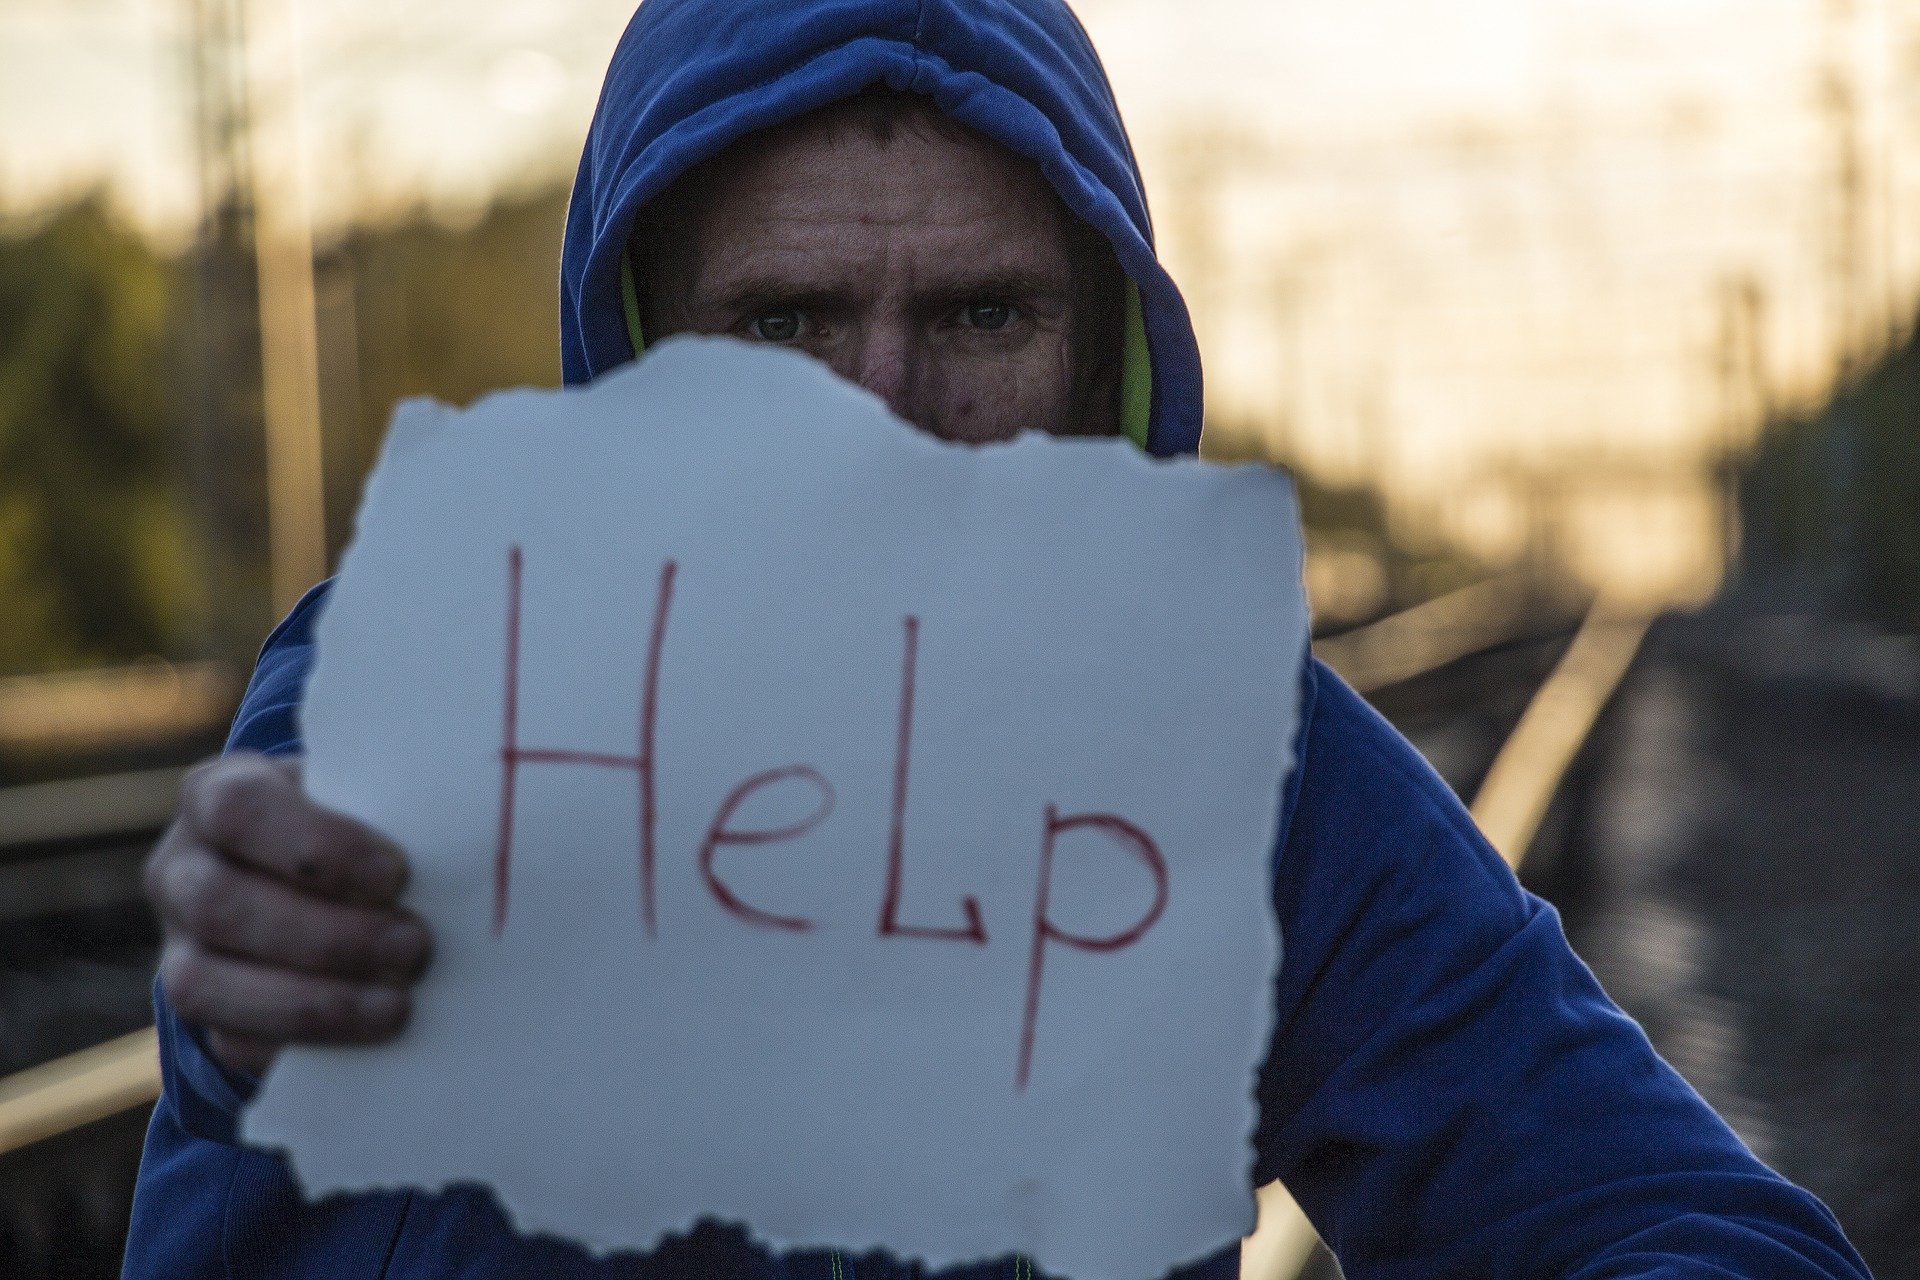 Homeless Man Seeking Help - VeteranCarDonations.org